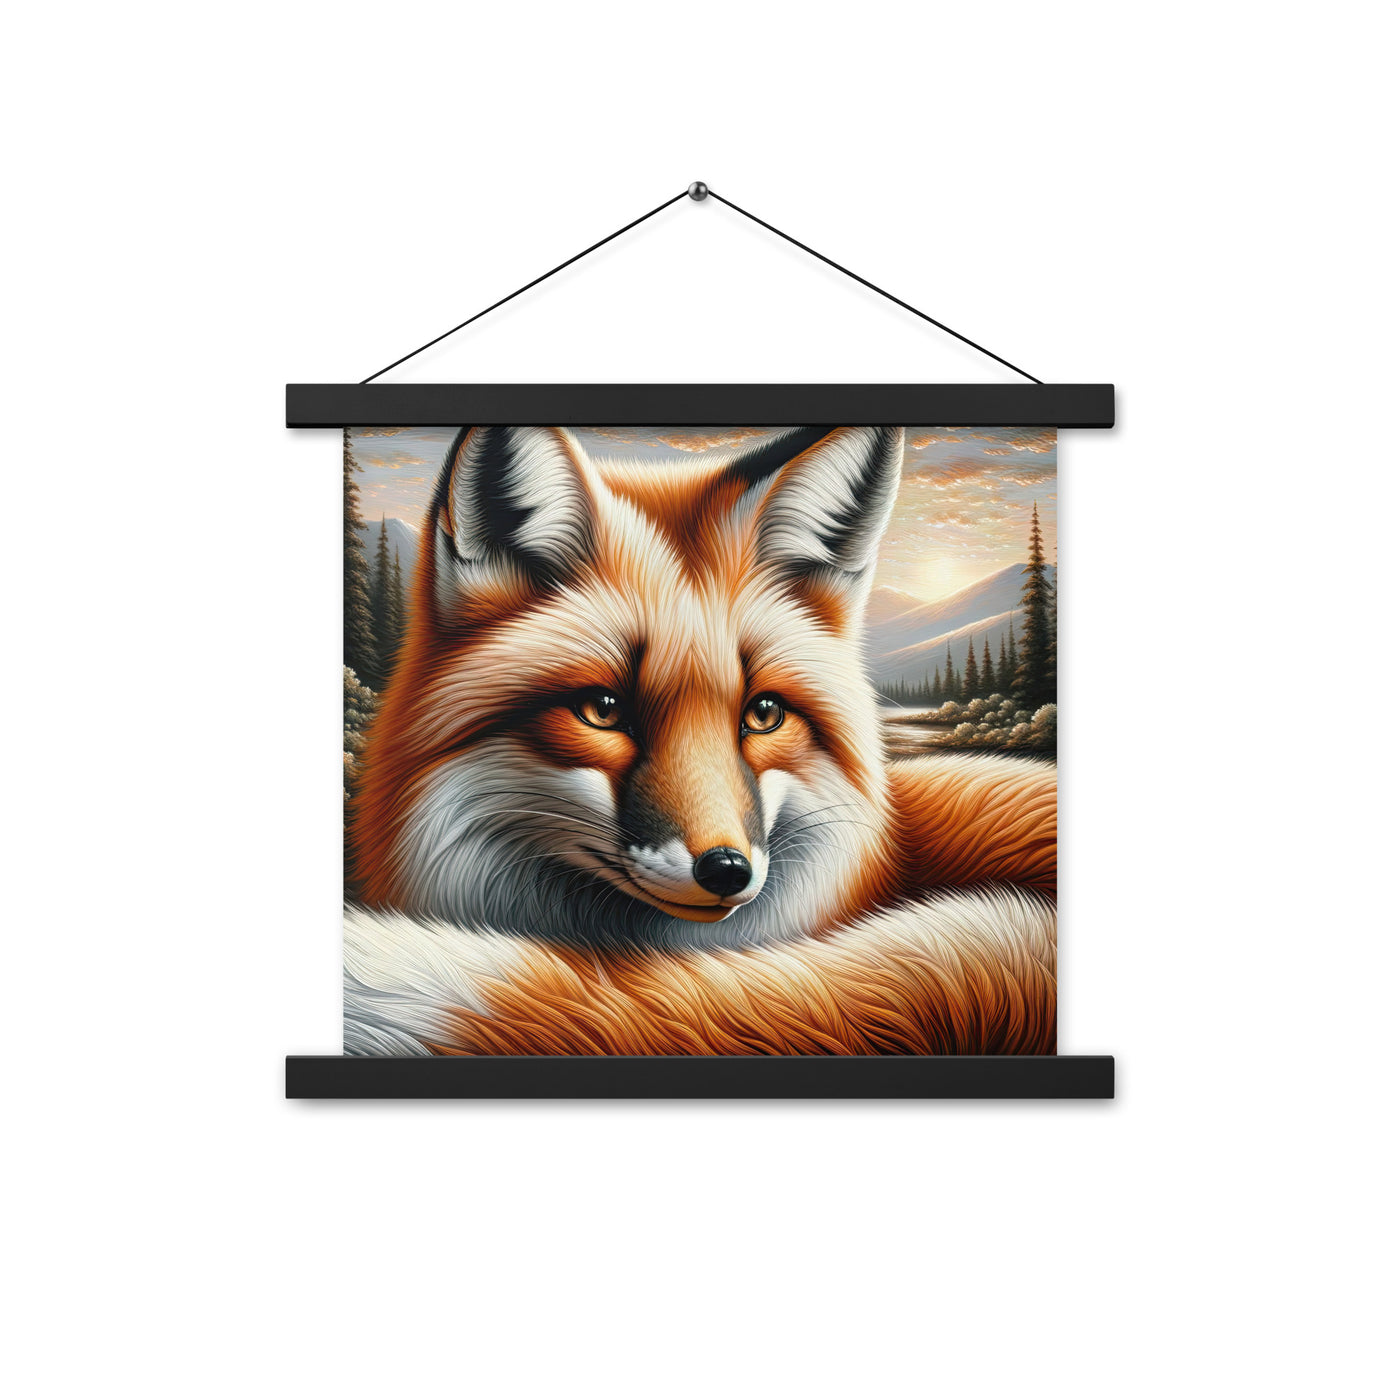 Ölgemälde eines nachdenklichen Fuchses mit weisem Blick - Premium Poster mit Aufhängung camping xxx yyy zzz 35.6 x 35.6 cm